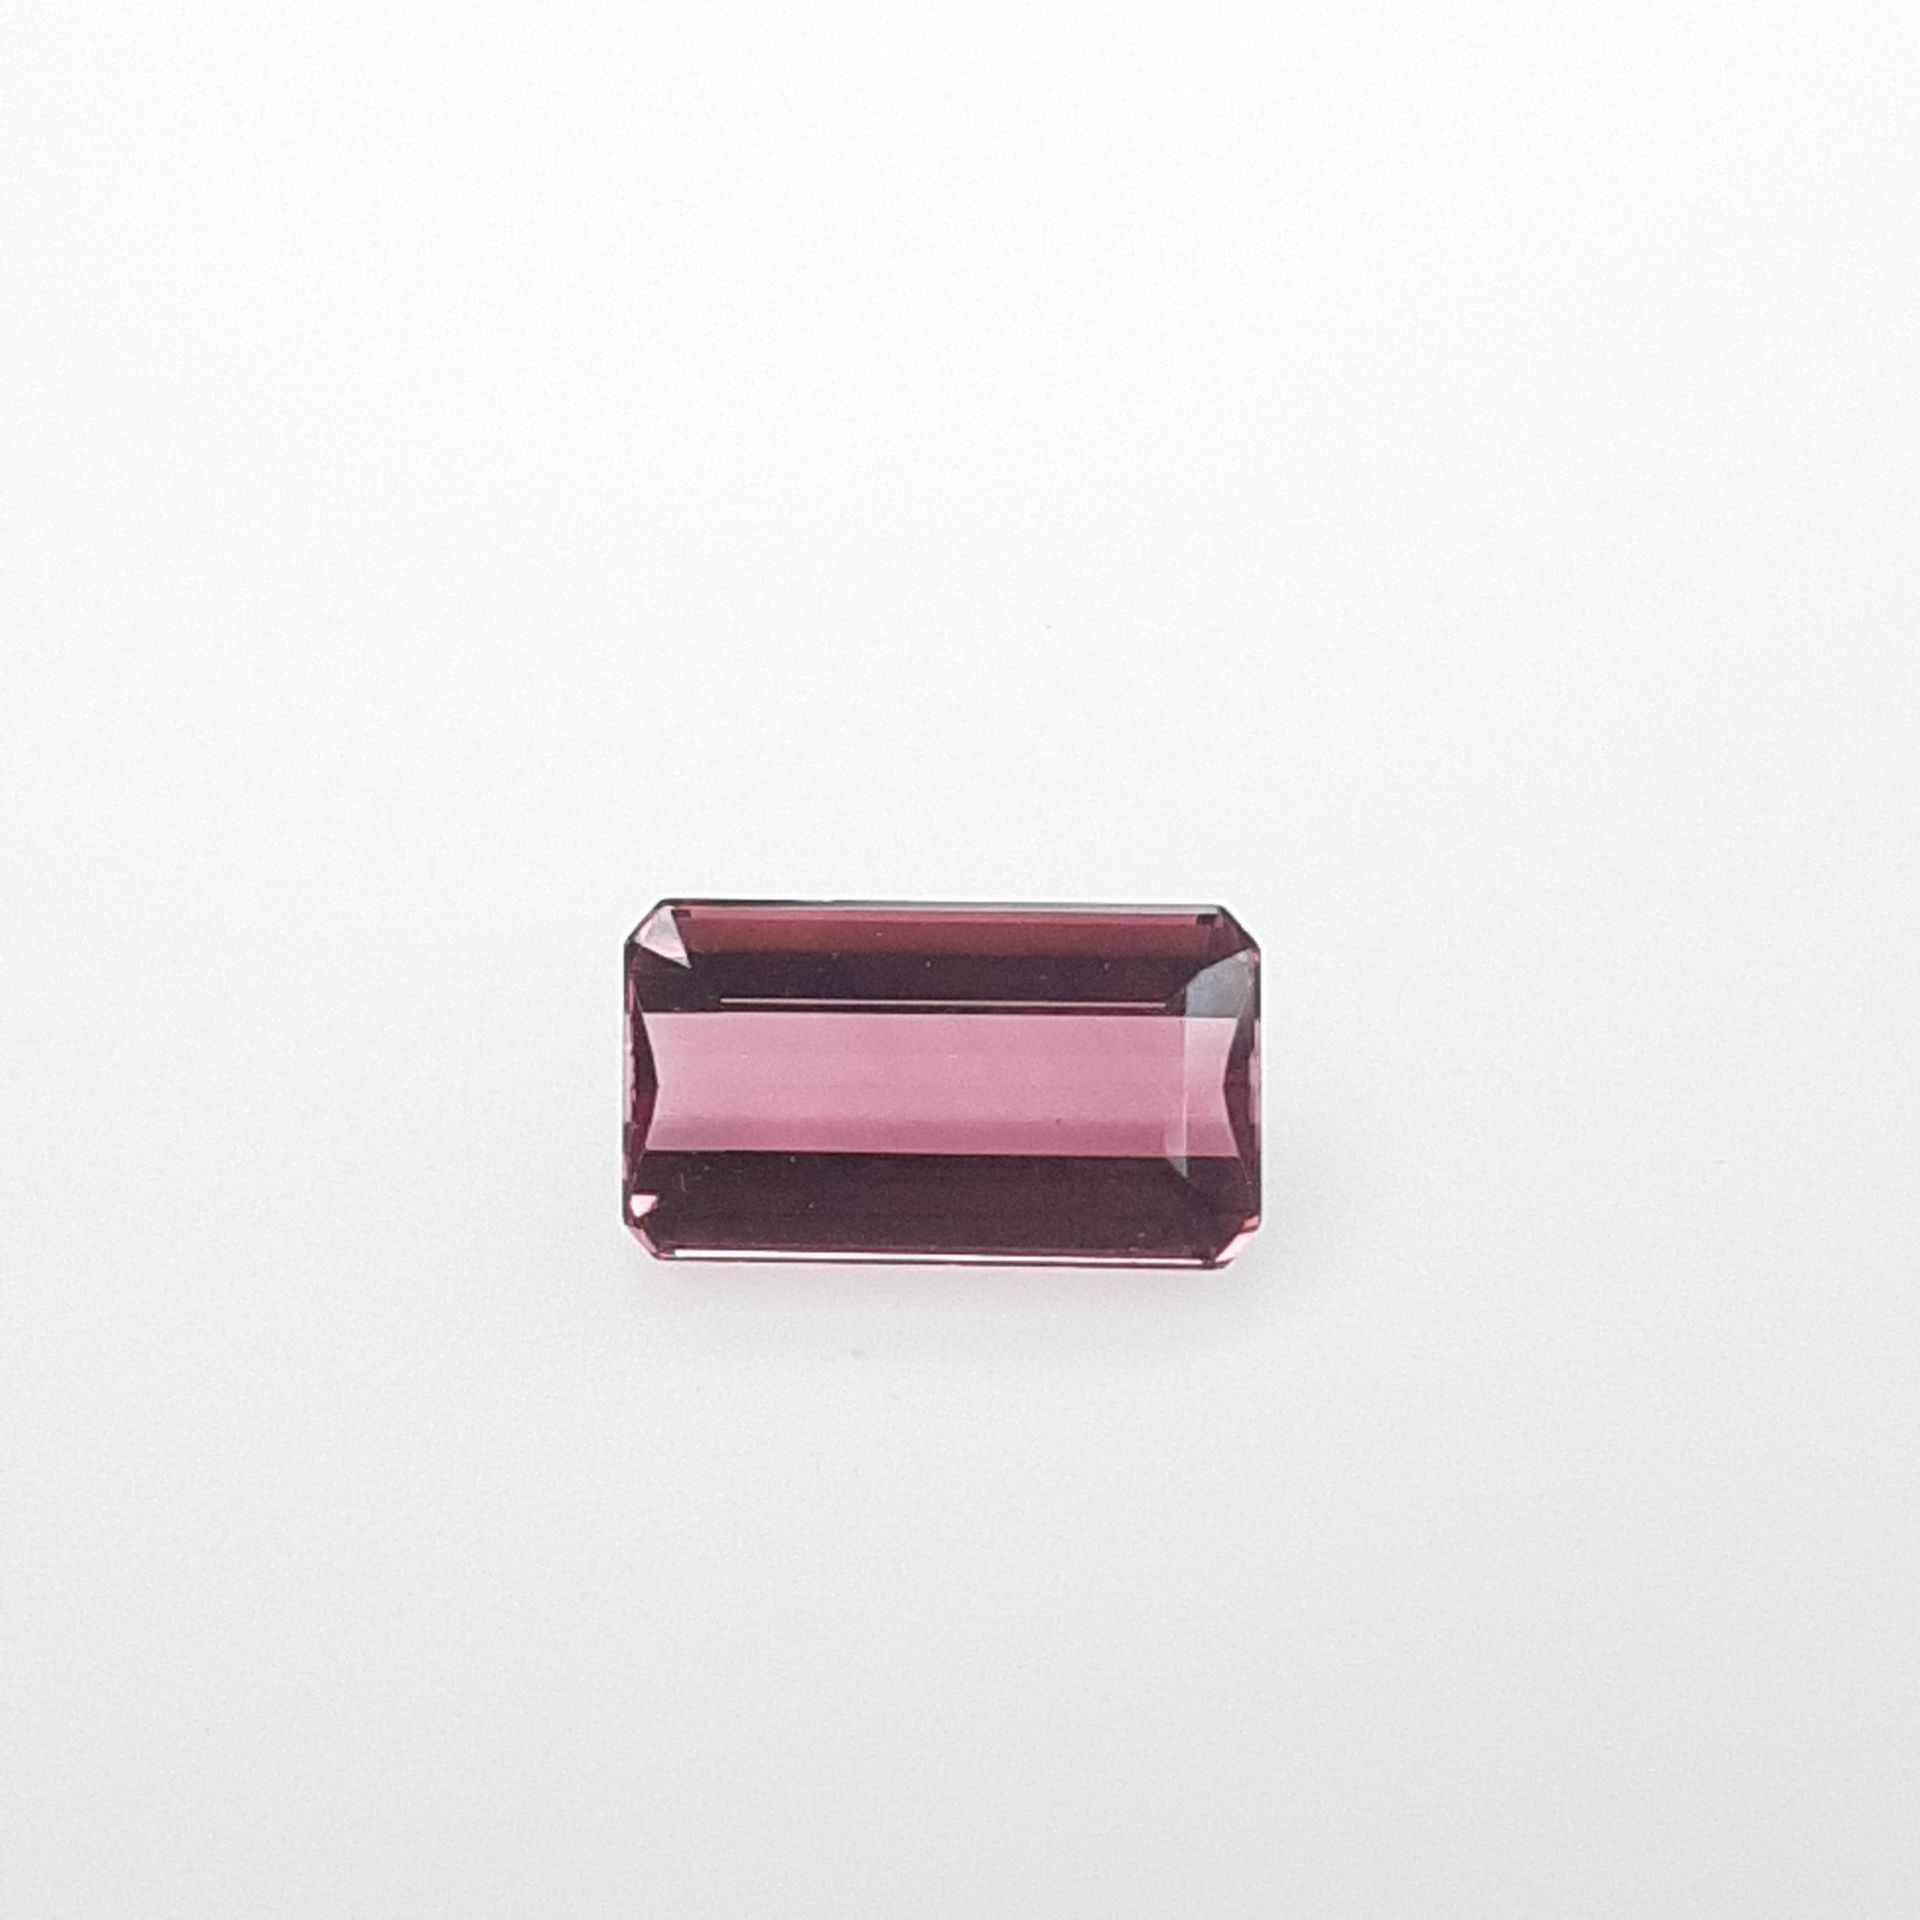 Rubellite - BRESIL - 4.55 cts RUBELITA - De Brasil - Color rojo rosado - Tamaño &hellip;